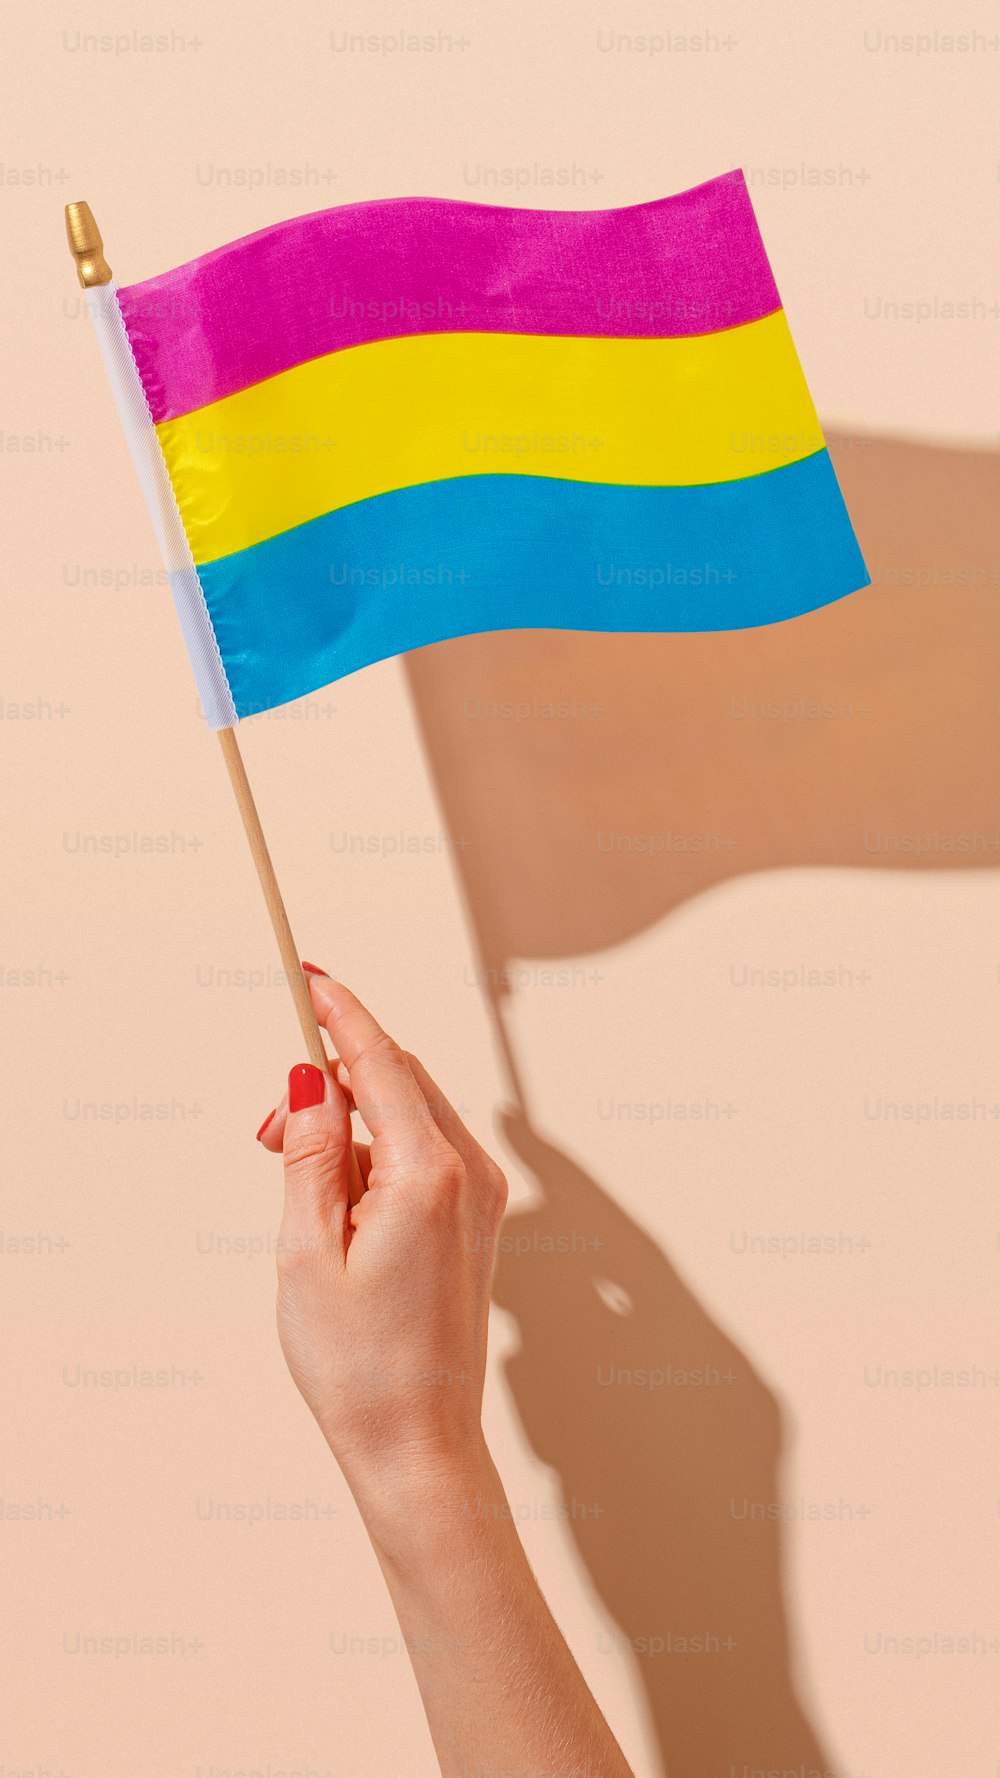 Une femme tenant un drapeau arc-en-ciel à la main